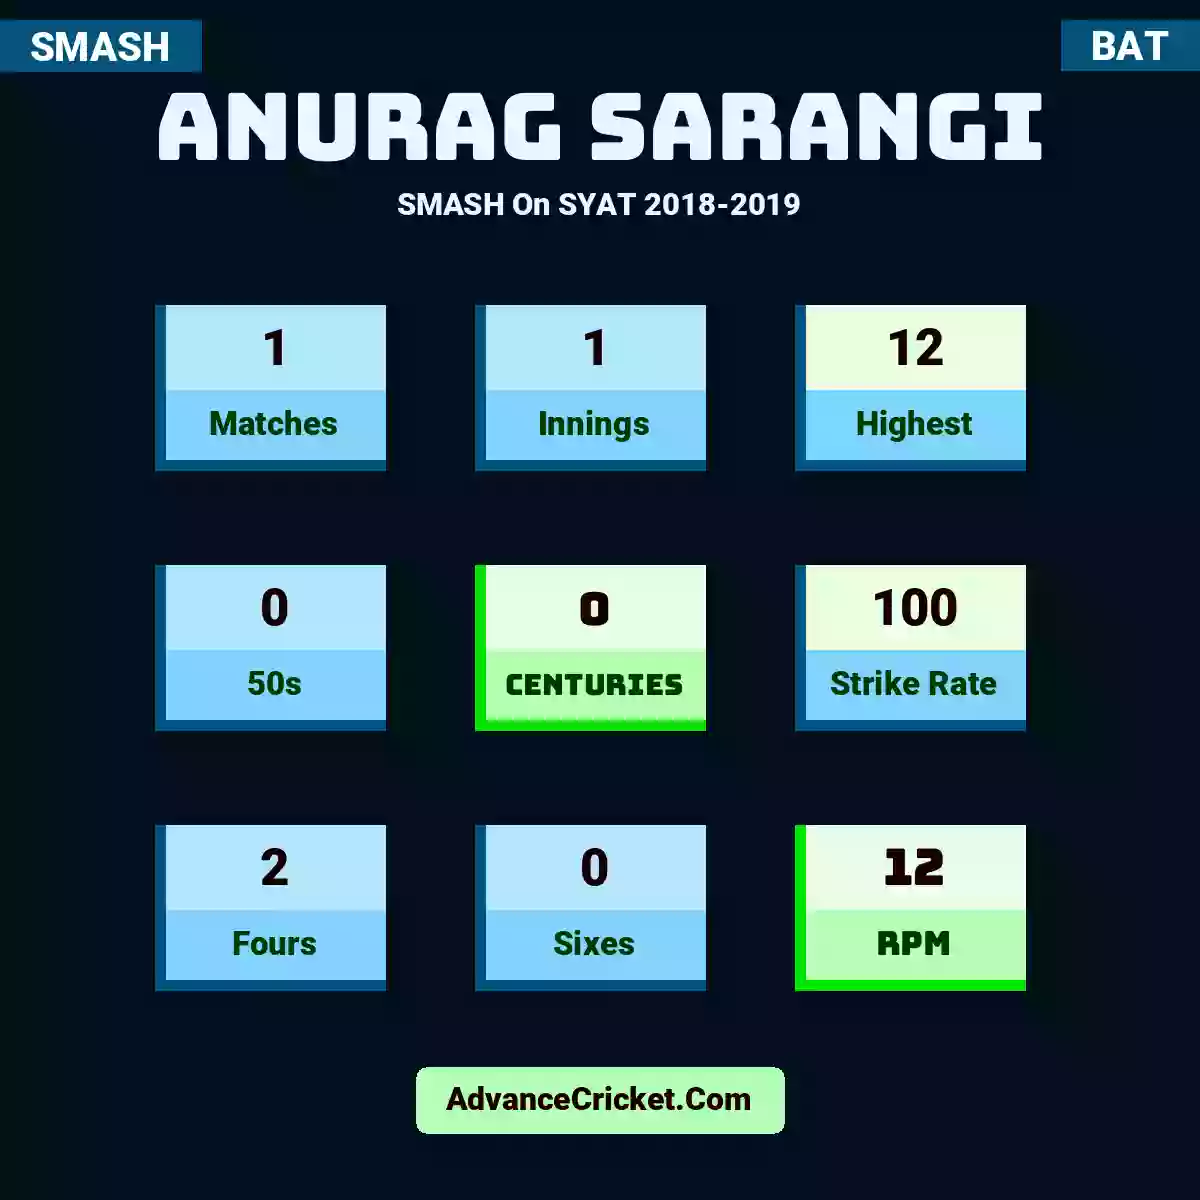 Anurag Sarangi SMASH  On SYAT 2018-2019, Anurag Sarangi played 1 matches, scored 12 runs as highest, 0 half-centuries, and 0 centuries, with a strike rate of 100. A.Sarangi hit 2 fours and 0 sixes, with an RPM of 12.